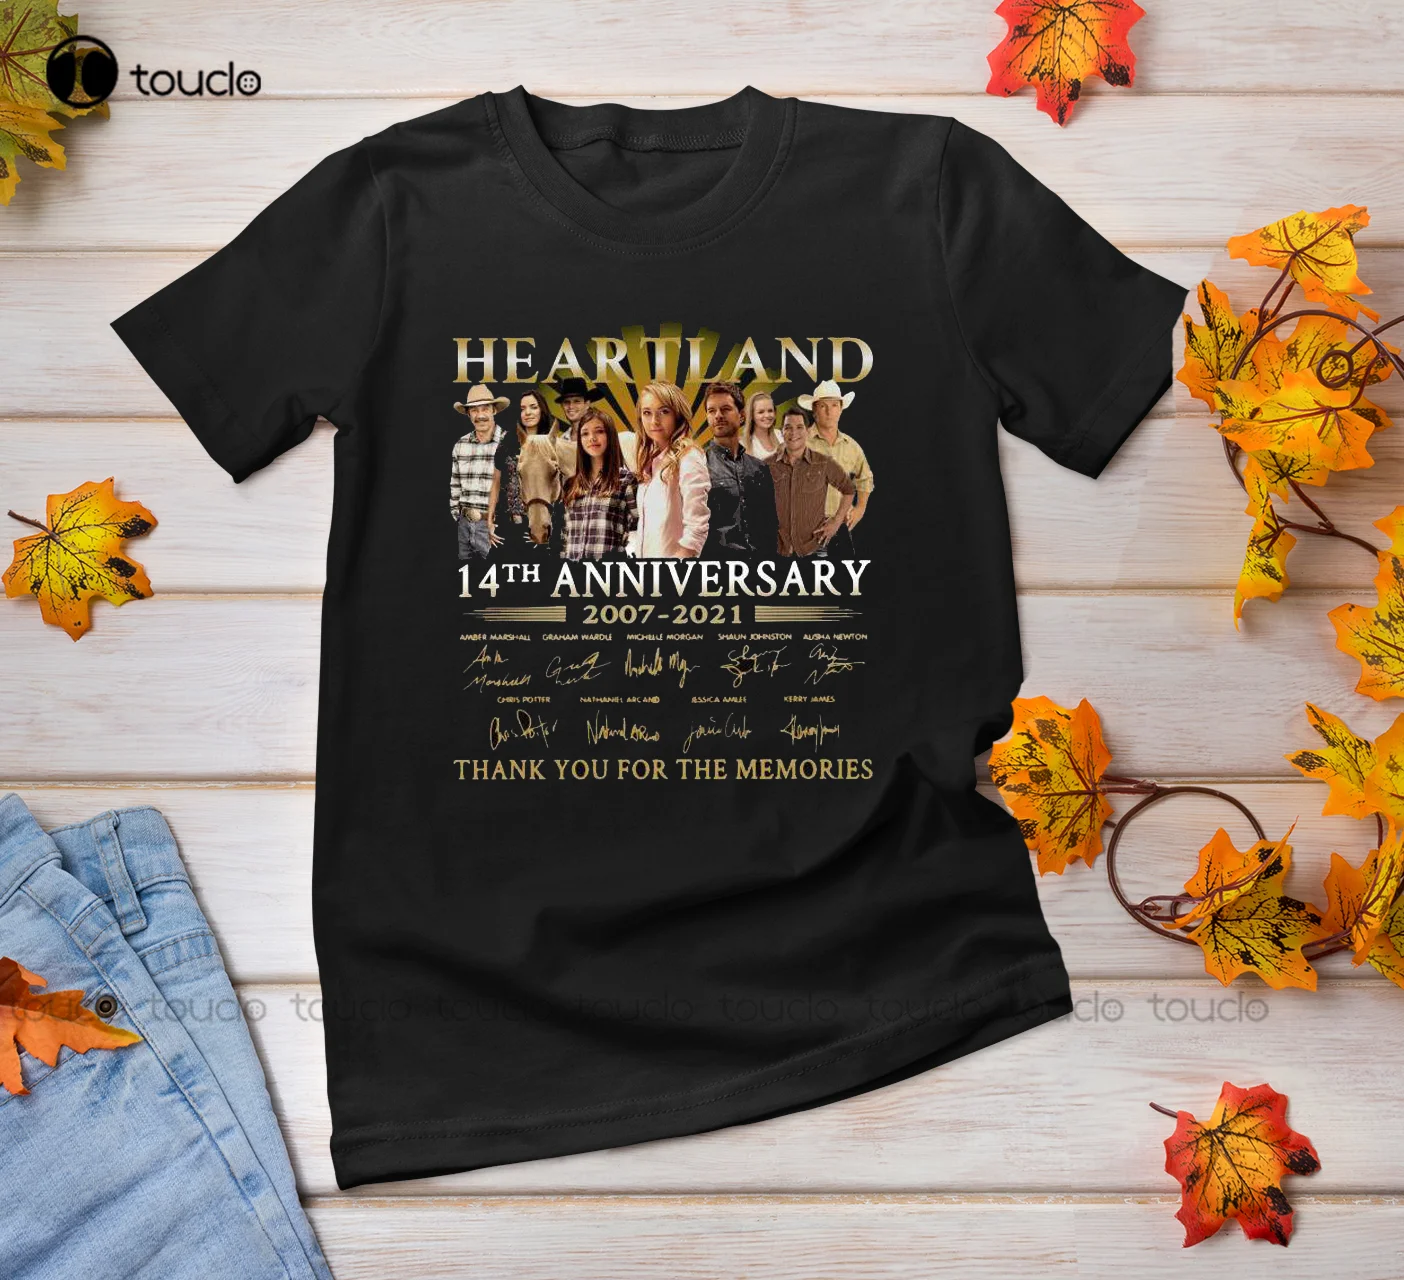 

Новинка, рубашка от Heart Land, 14 лет, 2007-2021, футболка унисекс с надписями сердечного ритма, надписями «Спасибо воспоминания» F717